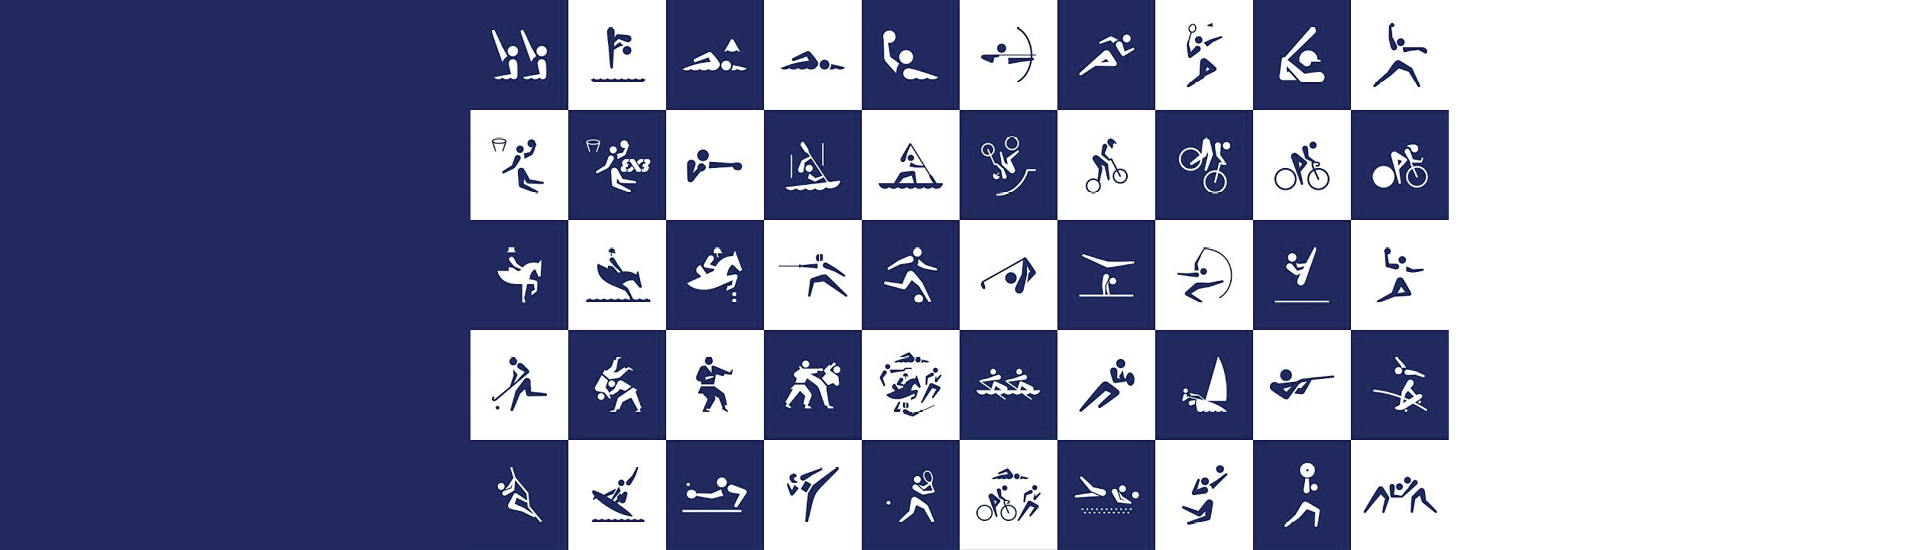 Diversos pictogramas relacionados a esportes em quadrados intercalados nas cores branco e azul marinho.